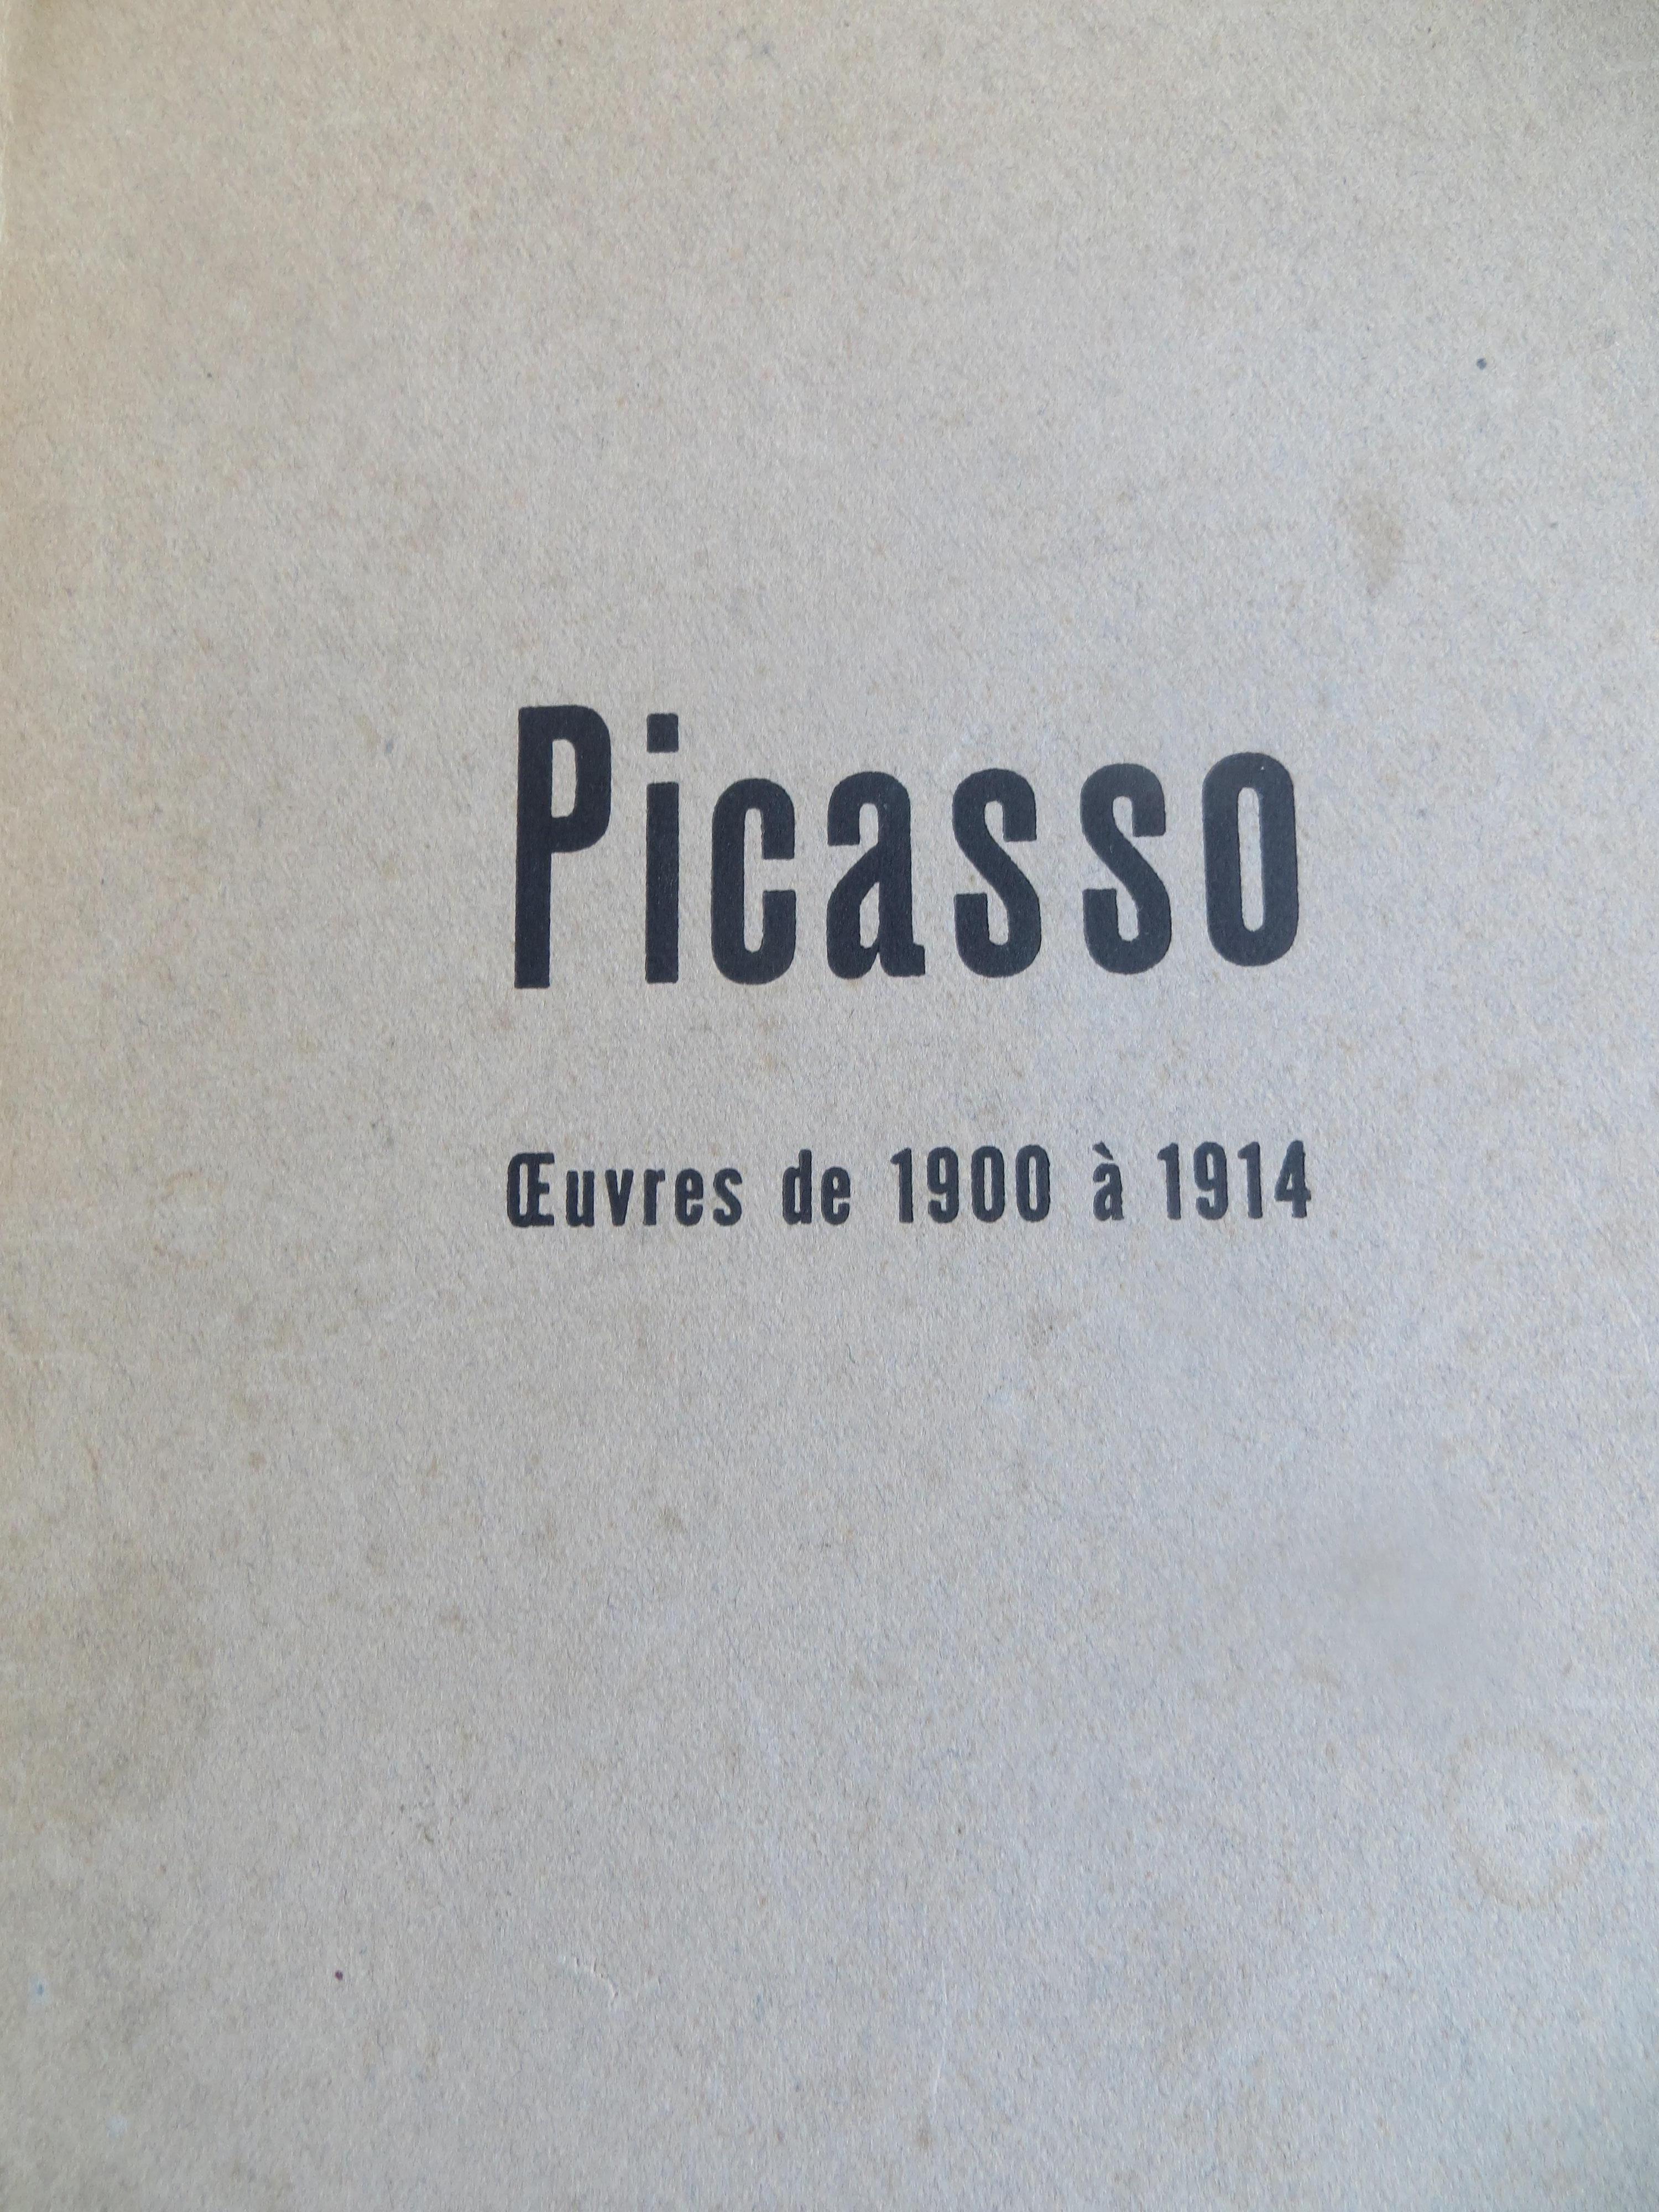 Picasso. Oeuvres de 1900 à 1914. Signature écrite à la main d'Oeuvres de musees - Cubisme Print par Pablo Picasso